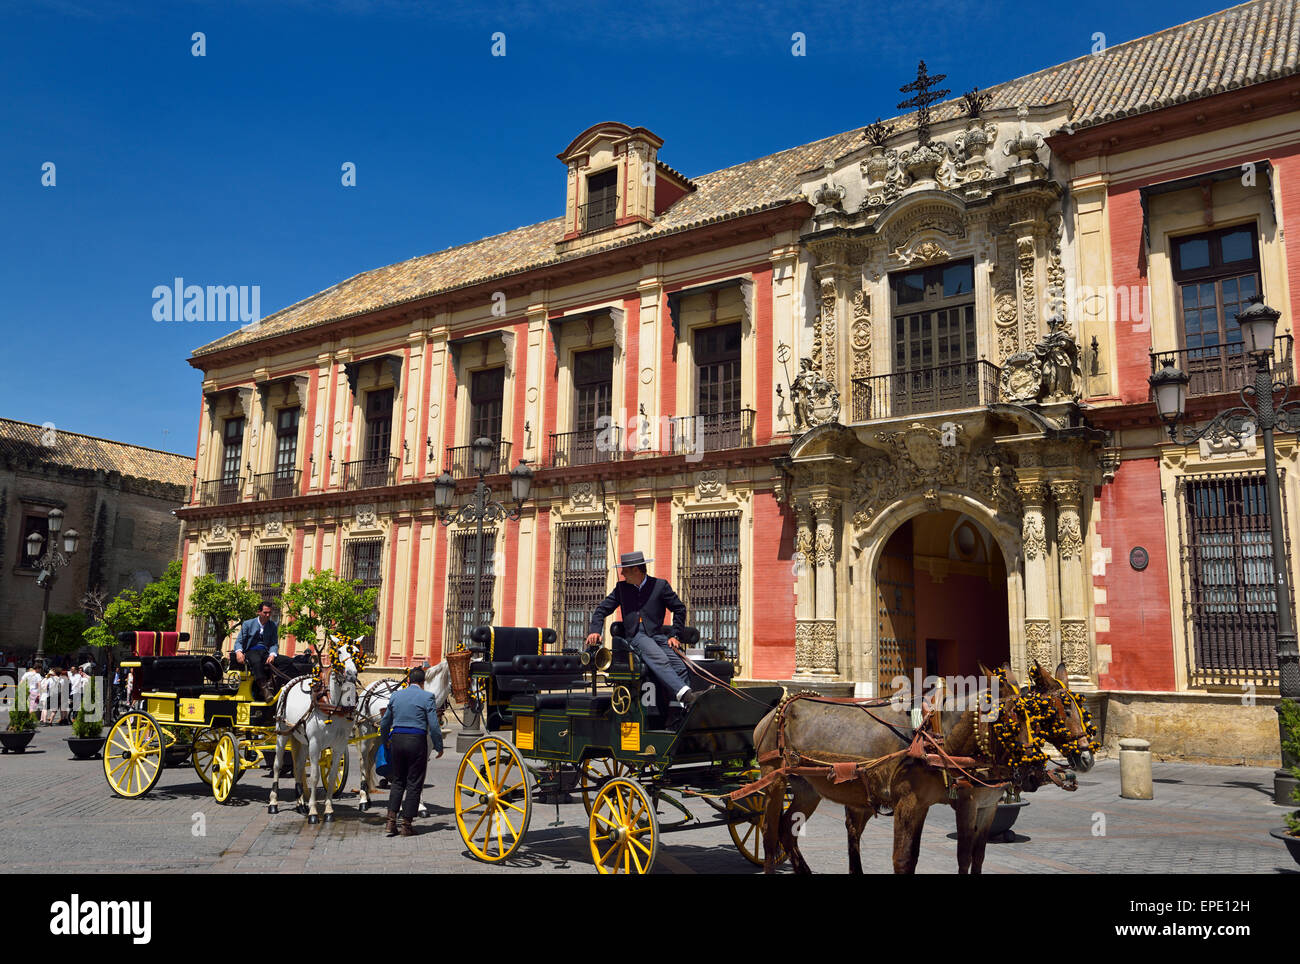 Arrosage des chevaux de calèches devant le palais des archevêques de Séville Espagne Banque D'Images